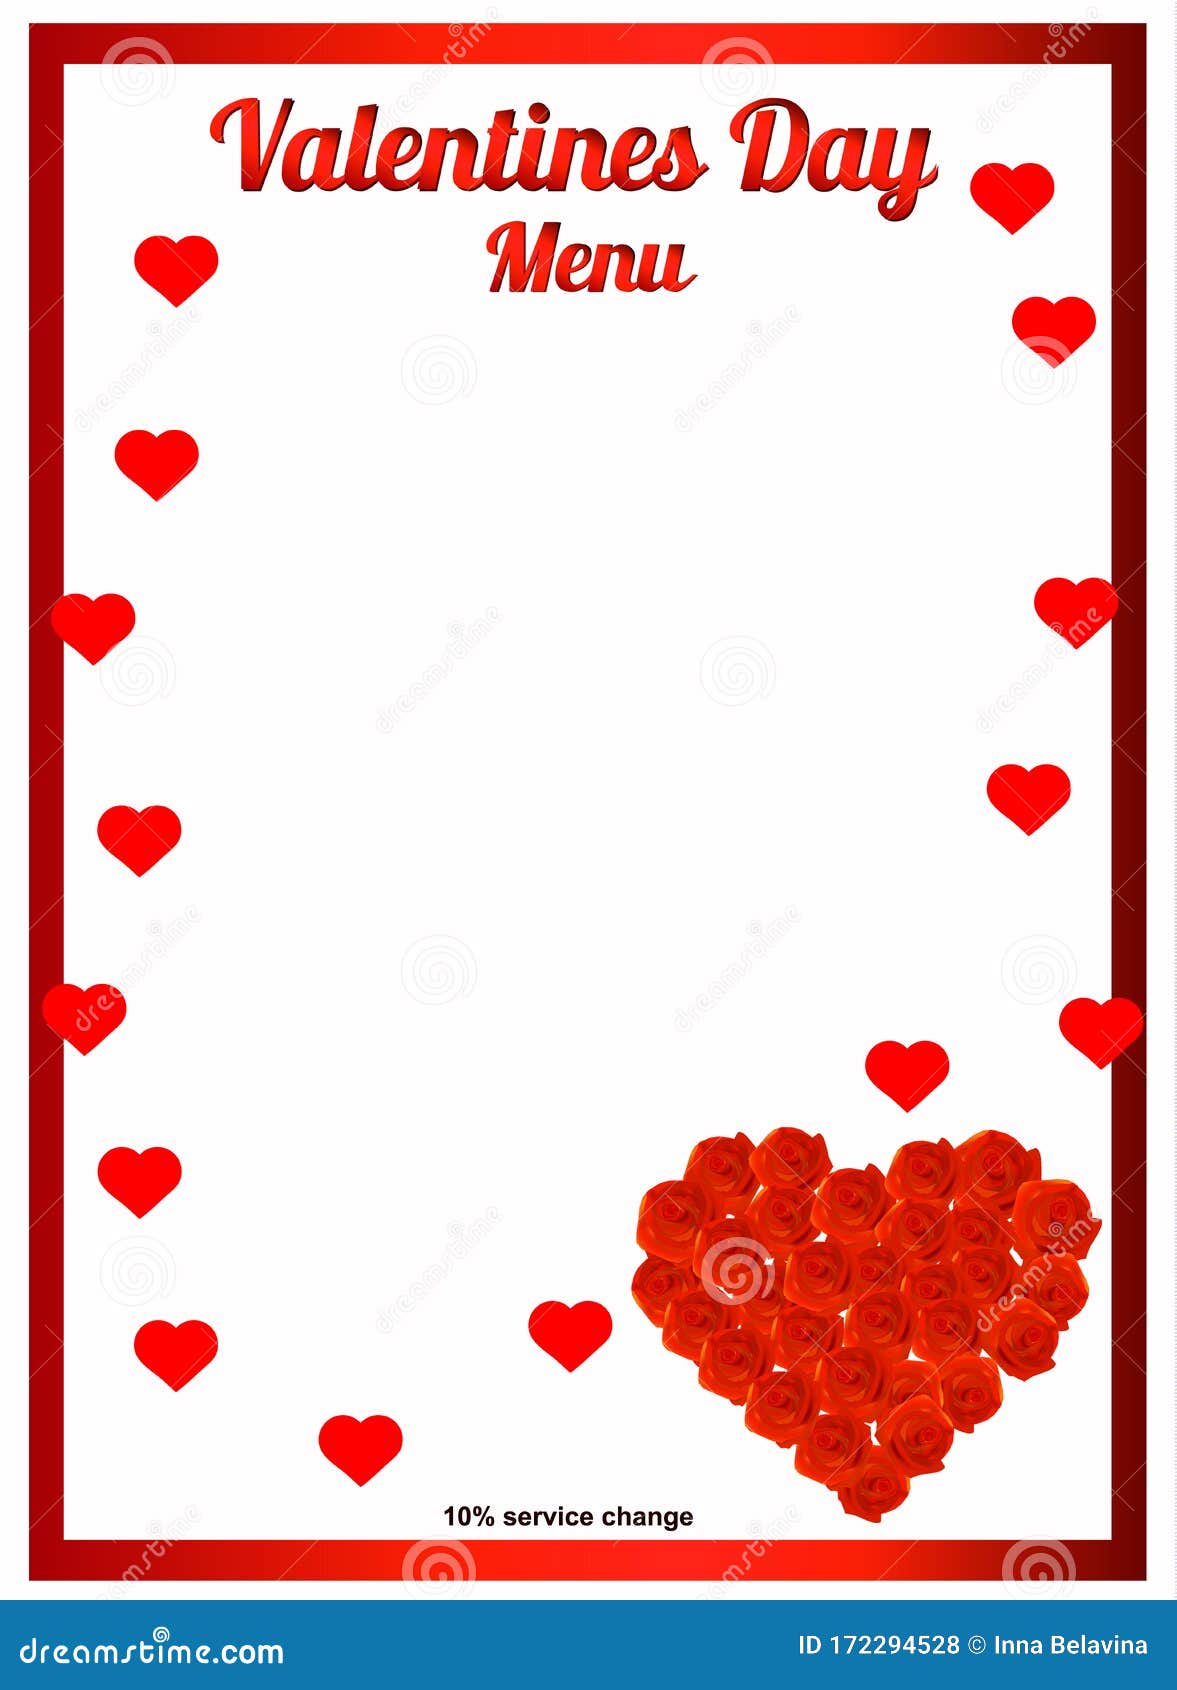 Sưu tập 1000 Valentines menu background Những hình nền đẹp cho ngày lễ tình nhân